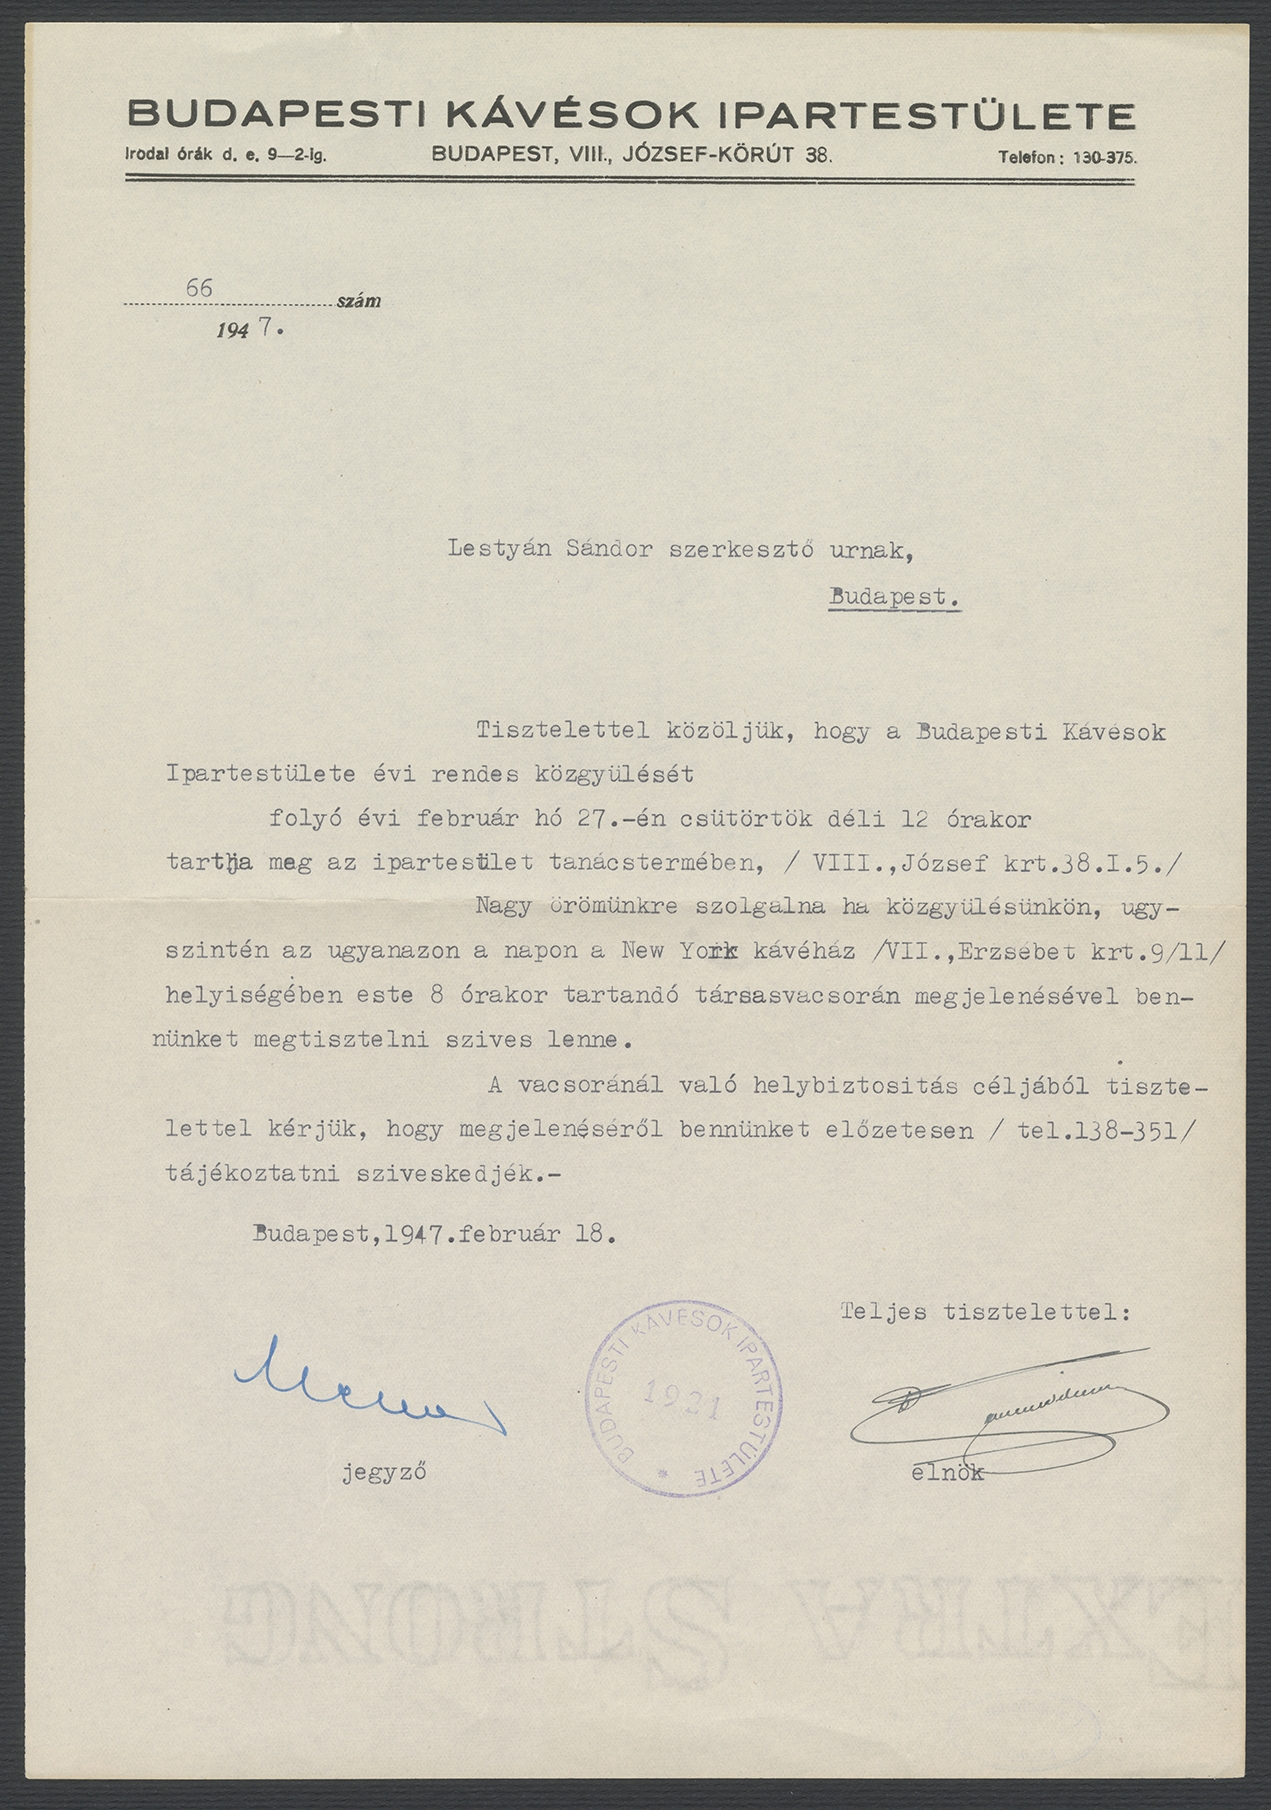 A Budapesti Kávésok Ipartestülete levele és közgyűlési meghívója Lestyán Sándor (1896–1956) írónak, 1947 (PIM Kézirattár)